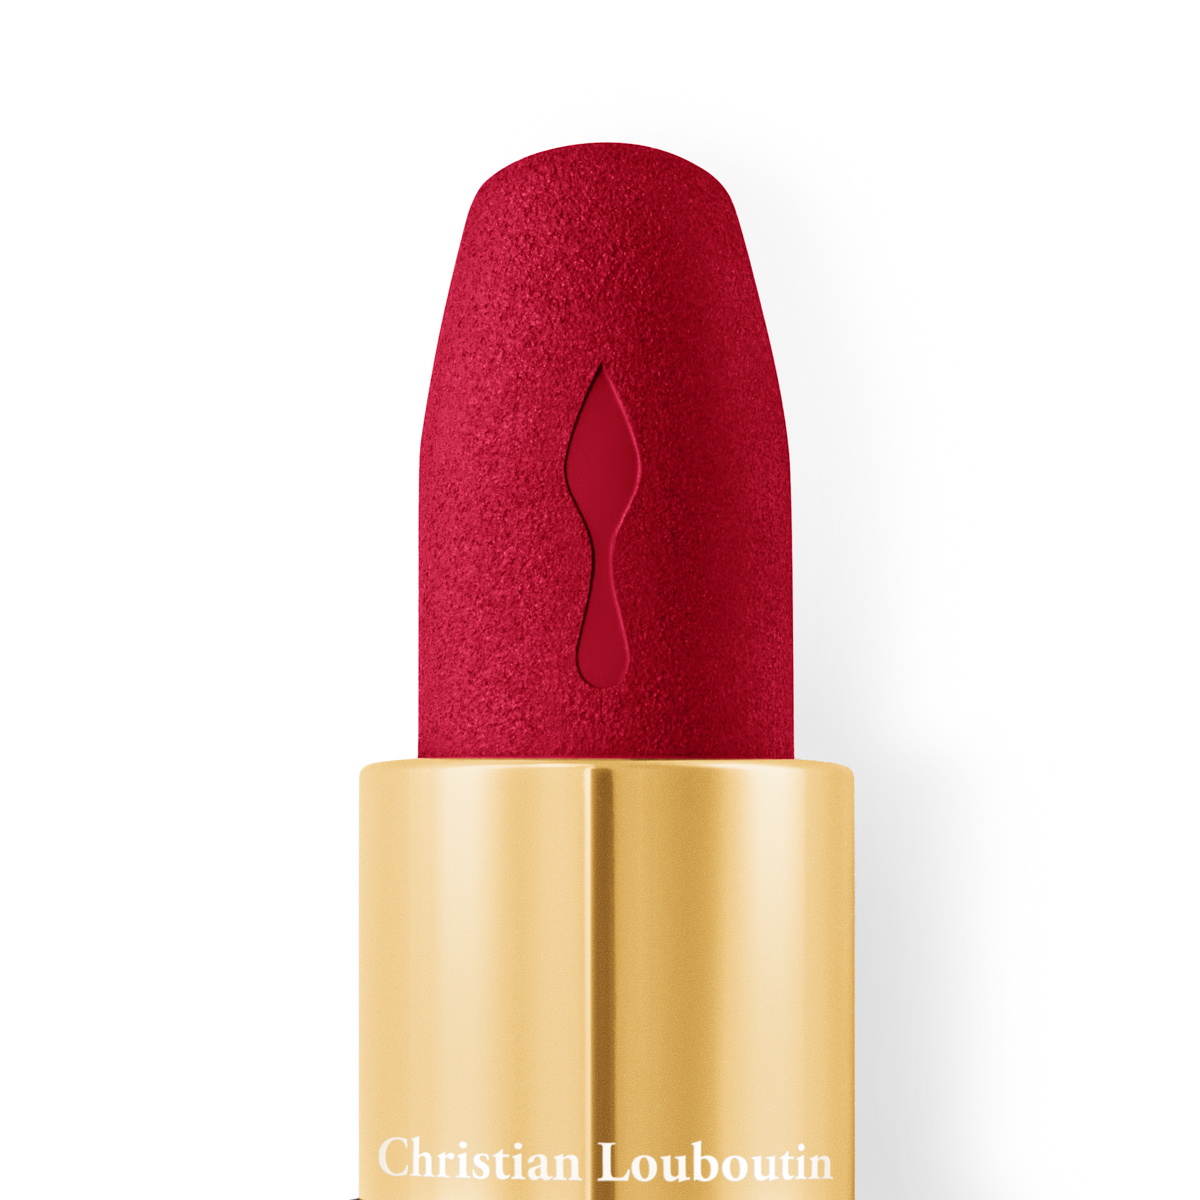 2 Christian Louboutin Velvet Matte Lip Sample Card, Colour Rouge